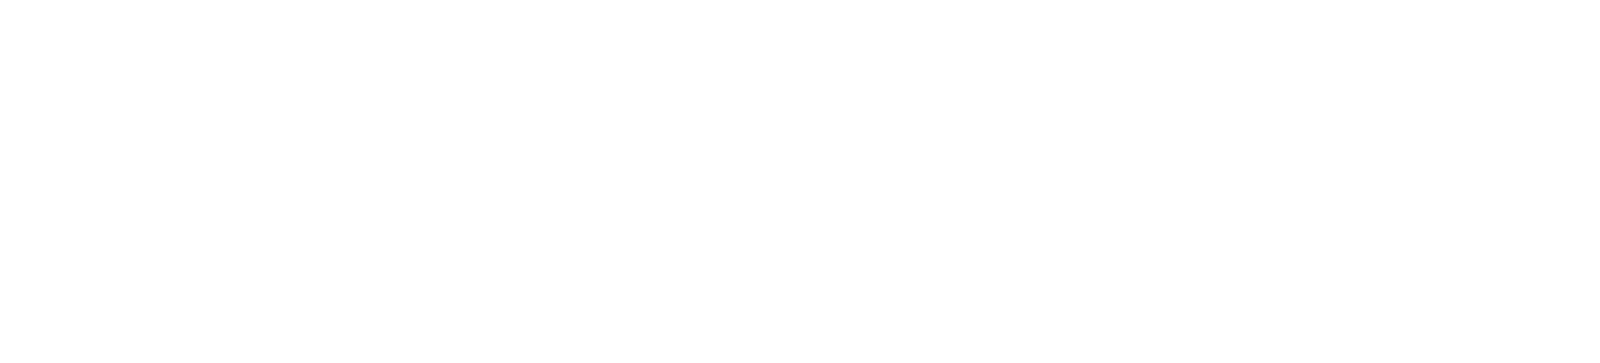 Georgia Tech Administrative Services Center logo.